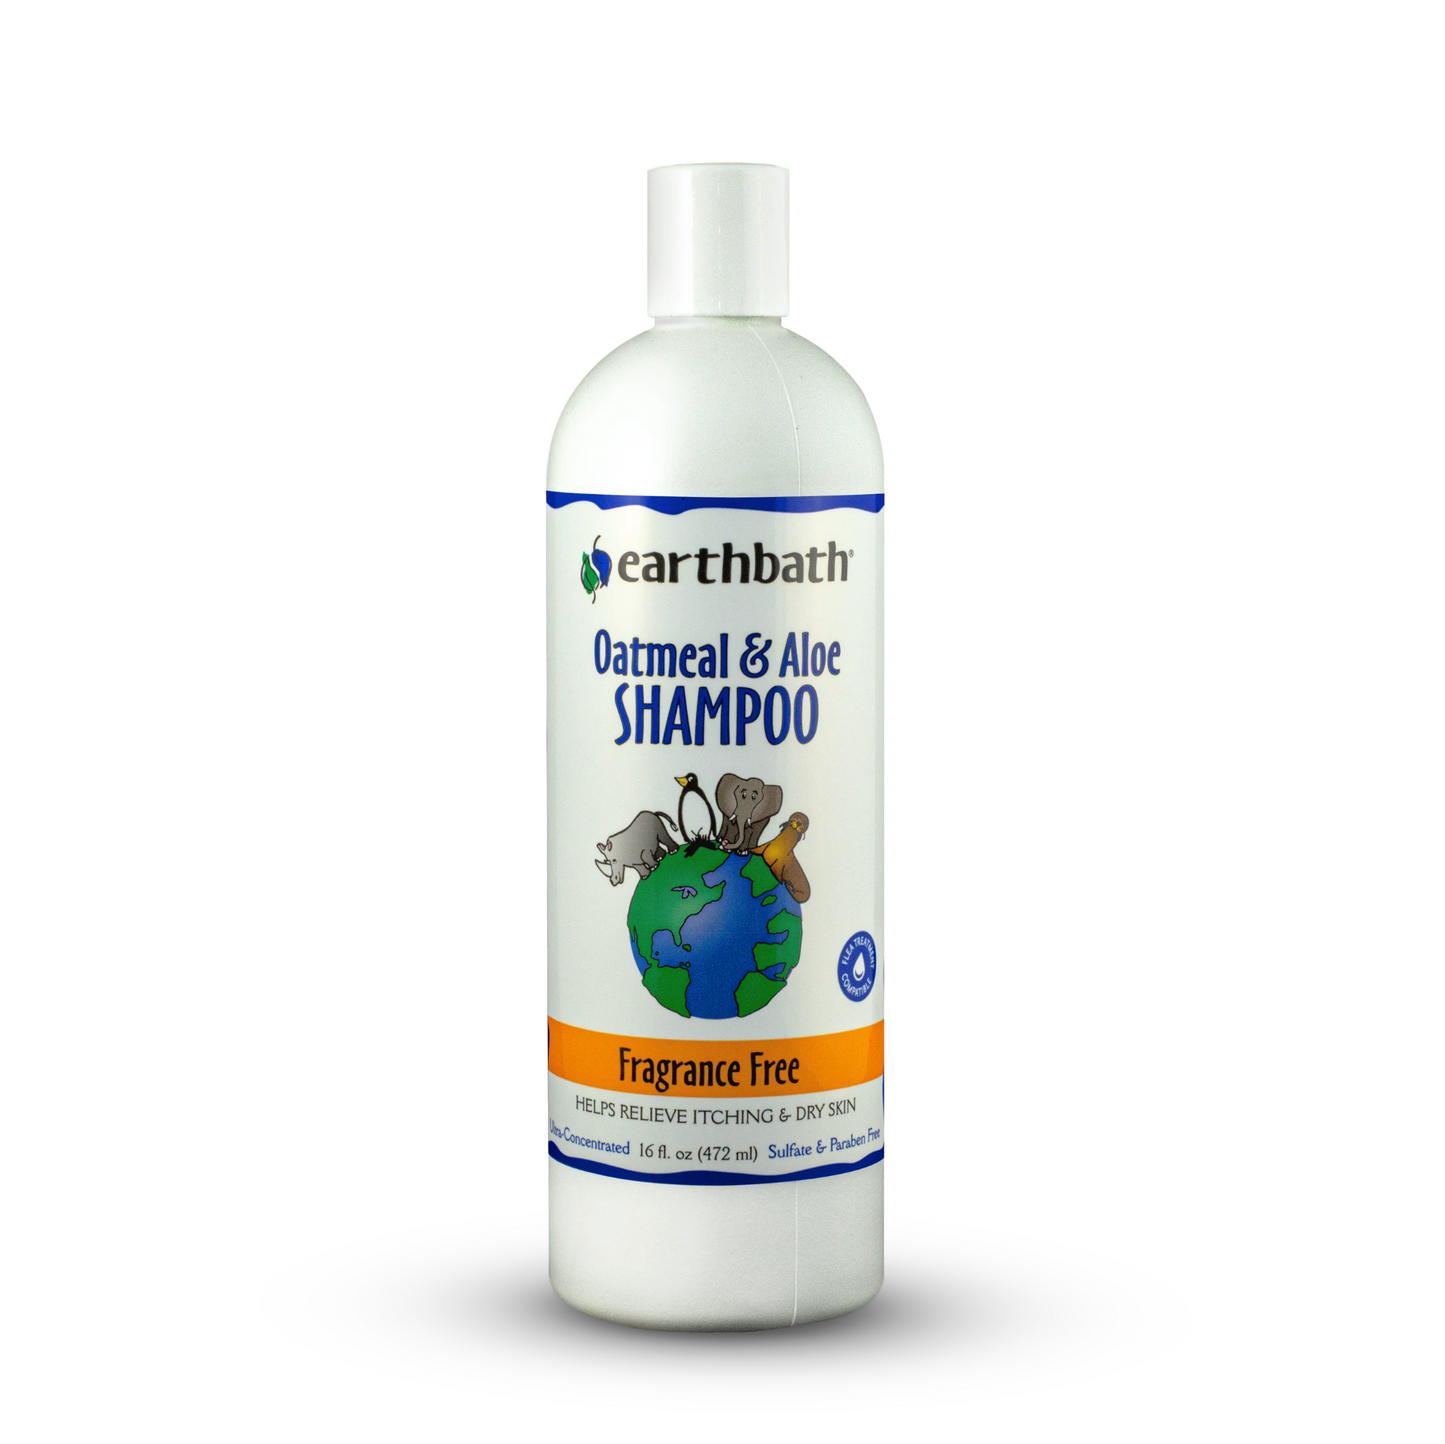 Oatmeal and Aloe Shampoo: Fragrance Free